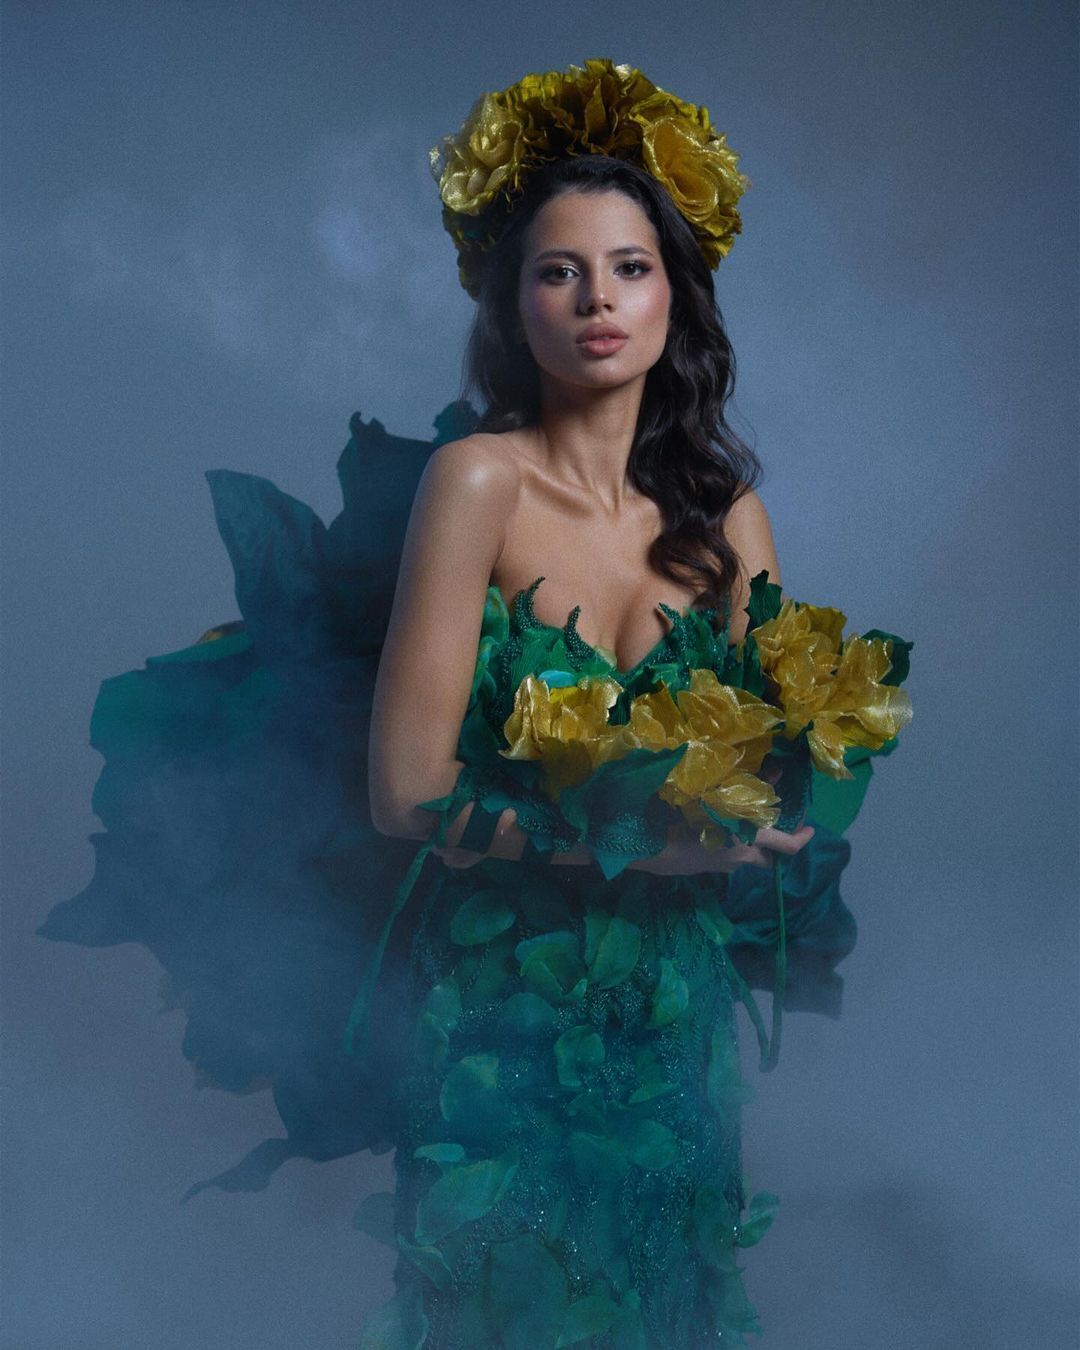 "Лесная песня", "Стальная леди" и вышиванка-мини: образы украинки на "Мисс Мира", которые поражают своей красотой. Фото